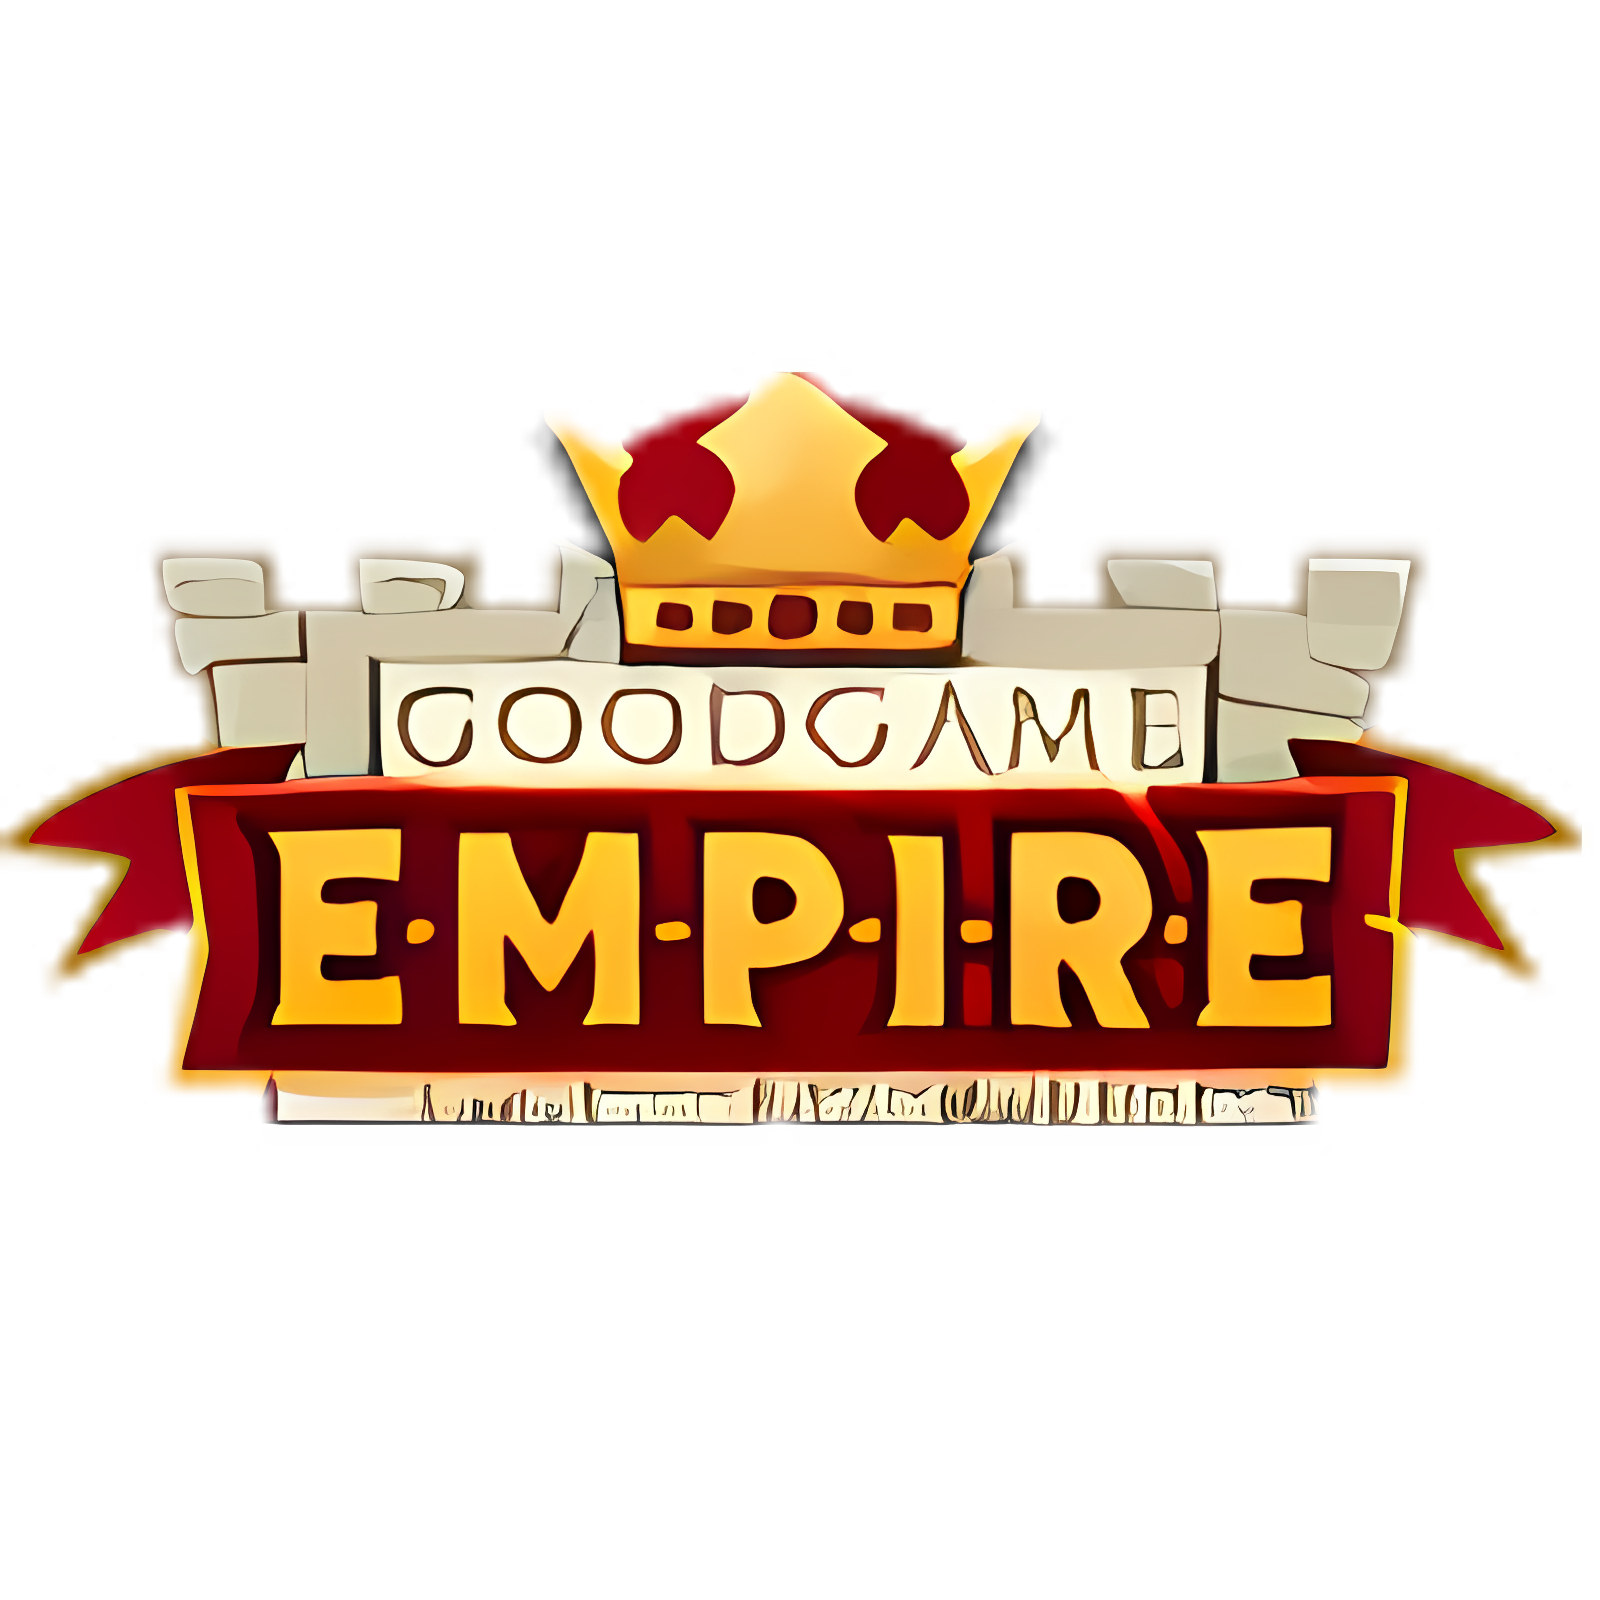 Más reciente Goodgame Empire En línea Web-App